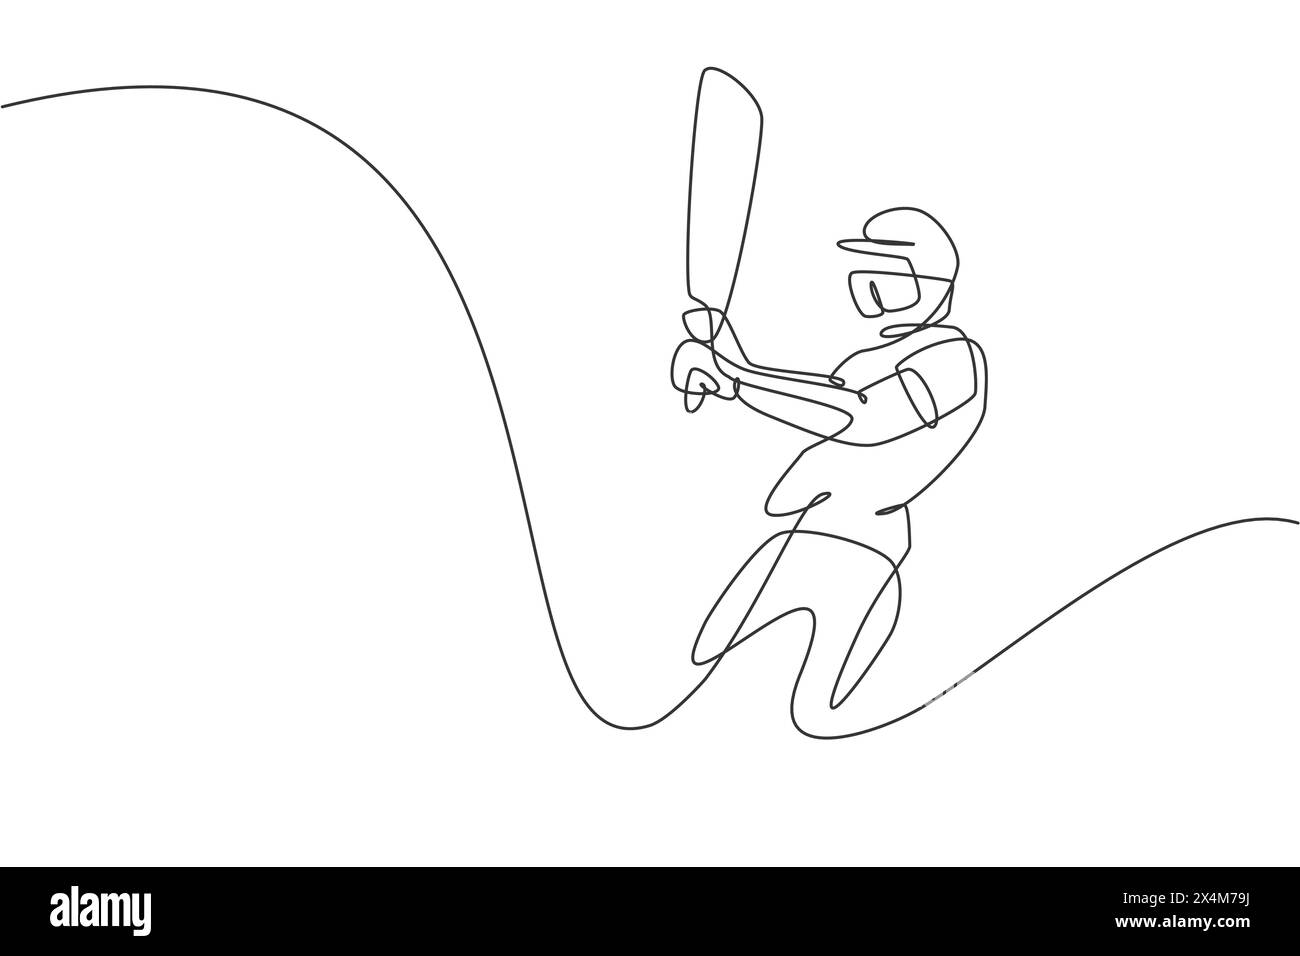 Einzelne durchgehende Linienzeichnung des jungen agilen Mannes-Cricketspielers, der Cricketschläger an der Übungsfläche-Vektor-Illustration schwingt. Sportübungskonzept. Tre Stock Vektor